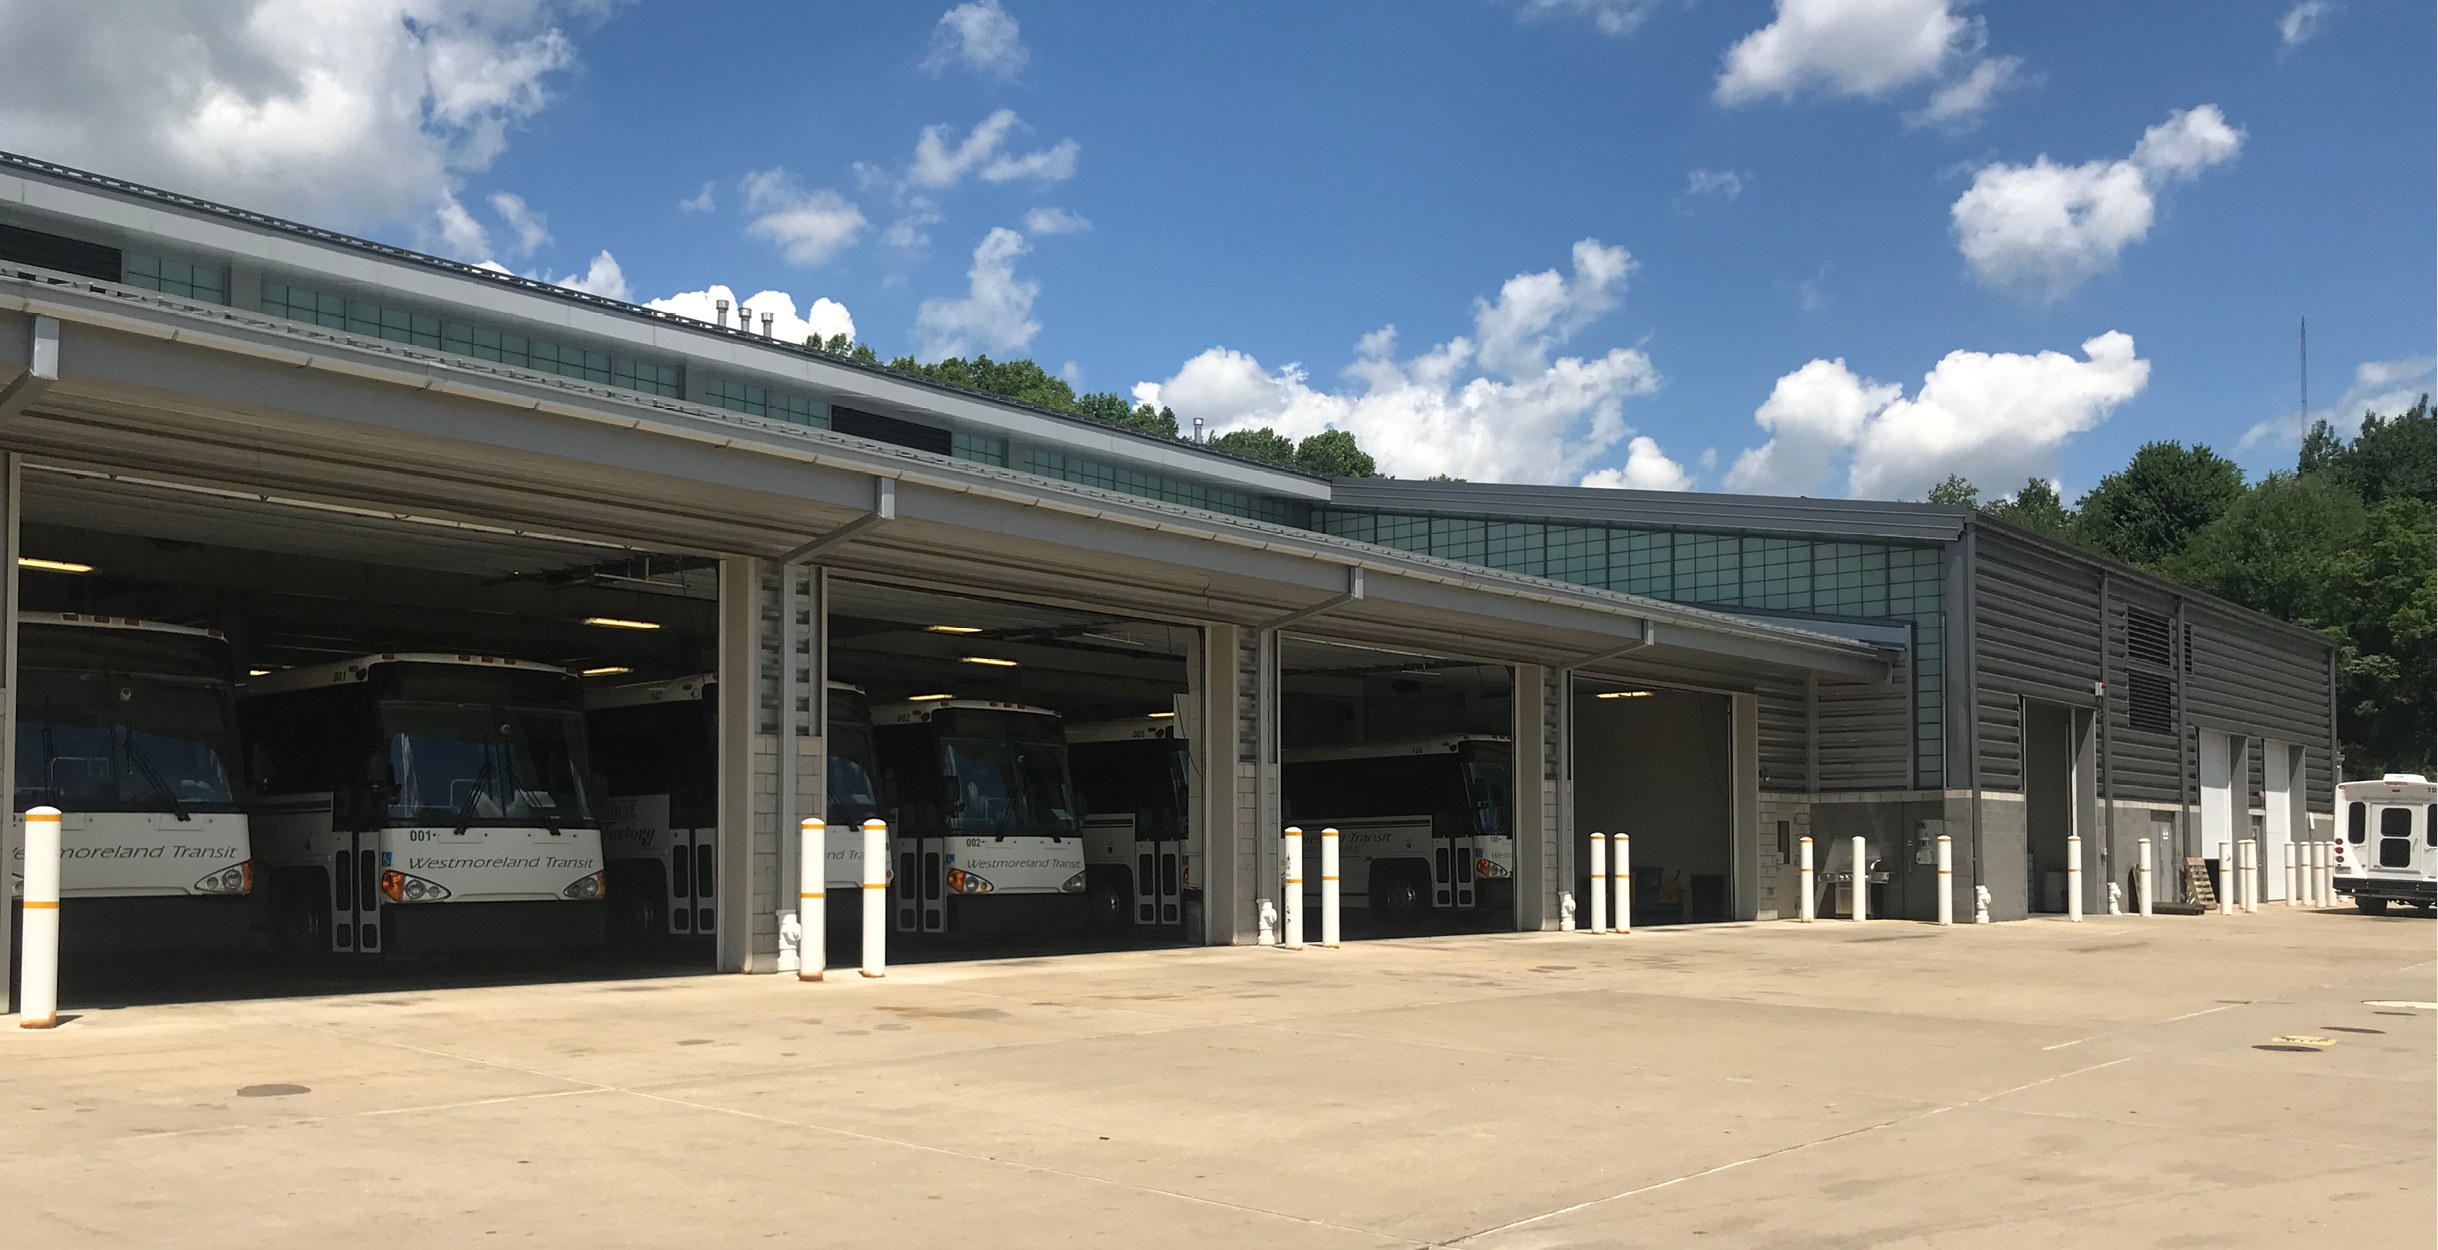 Westmoreland County Transit Authority Bus Storage Facility